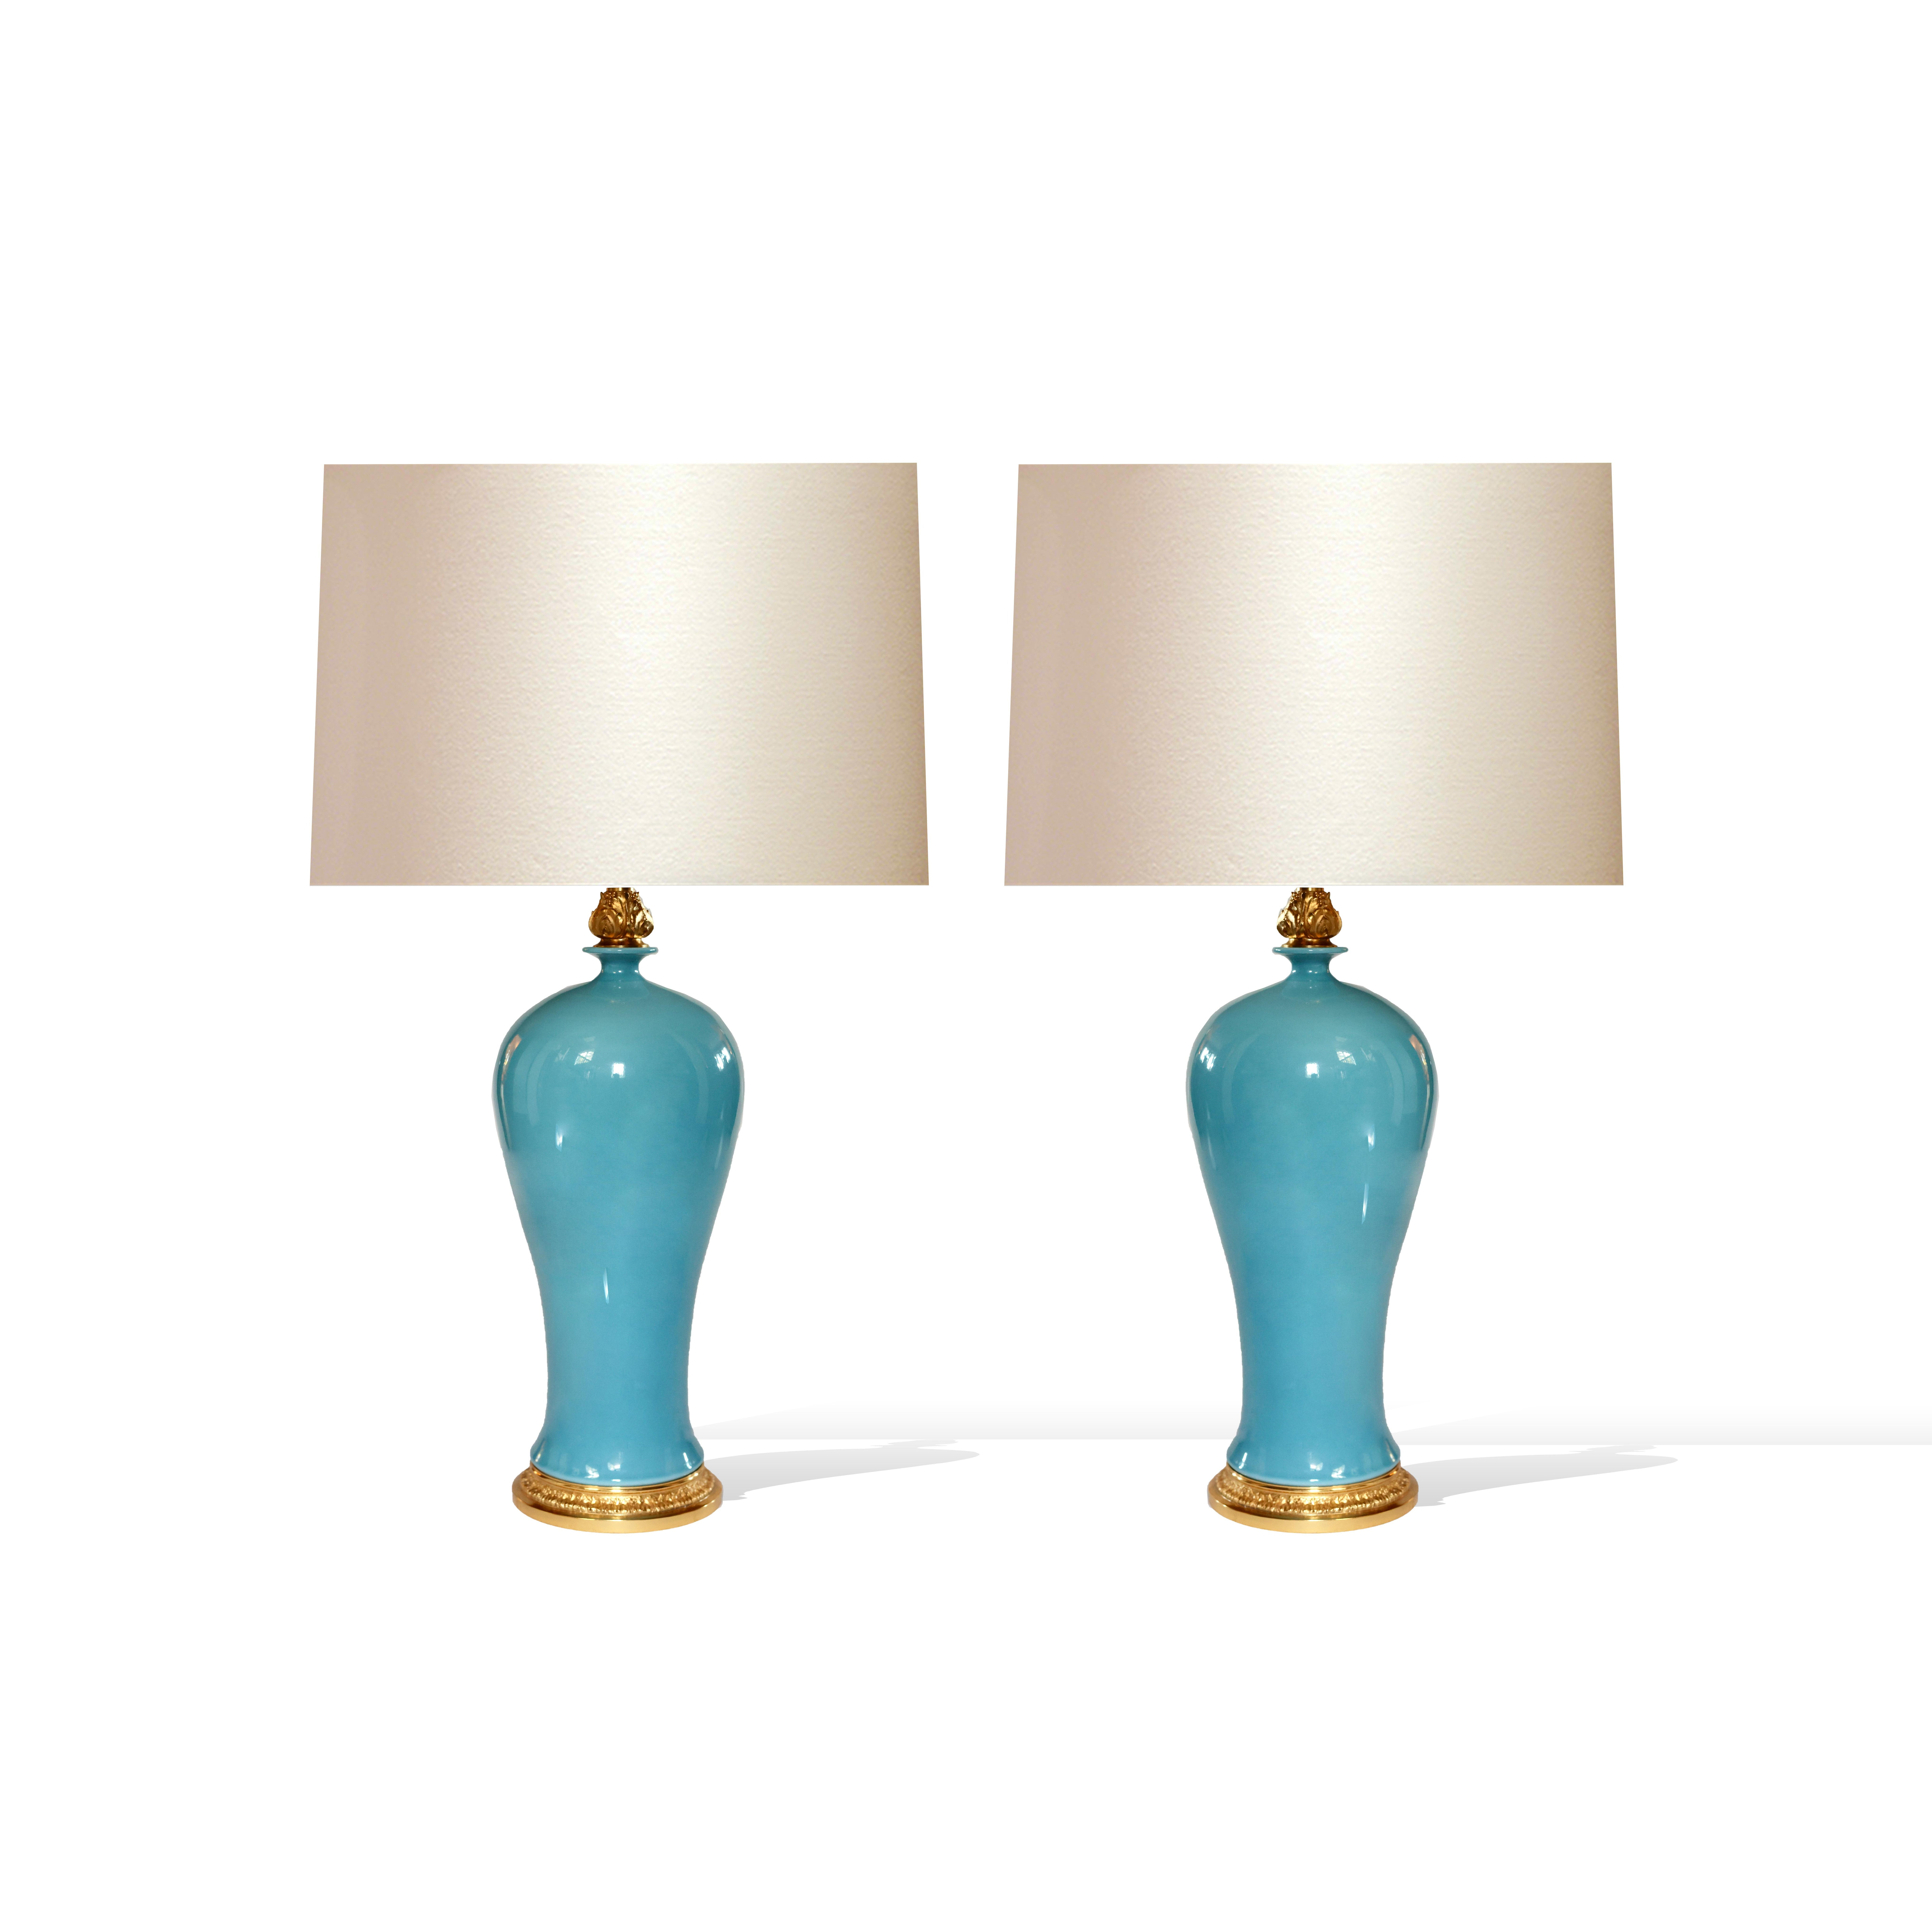 Lampes en porcelaine émaillée bleue avec bases et décorations en laiton doré 
Chaque lampe a installé deux douilles E26.120W au total 
L'abat-jour n'est pas inclus.
Jusqu'au sommet de la porcelaine 16